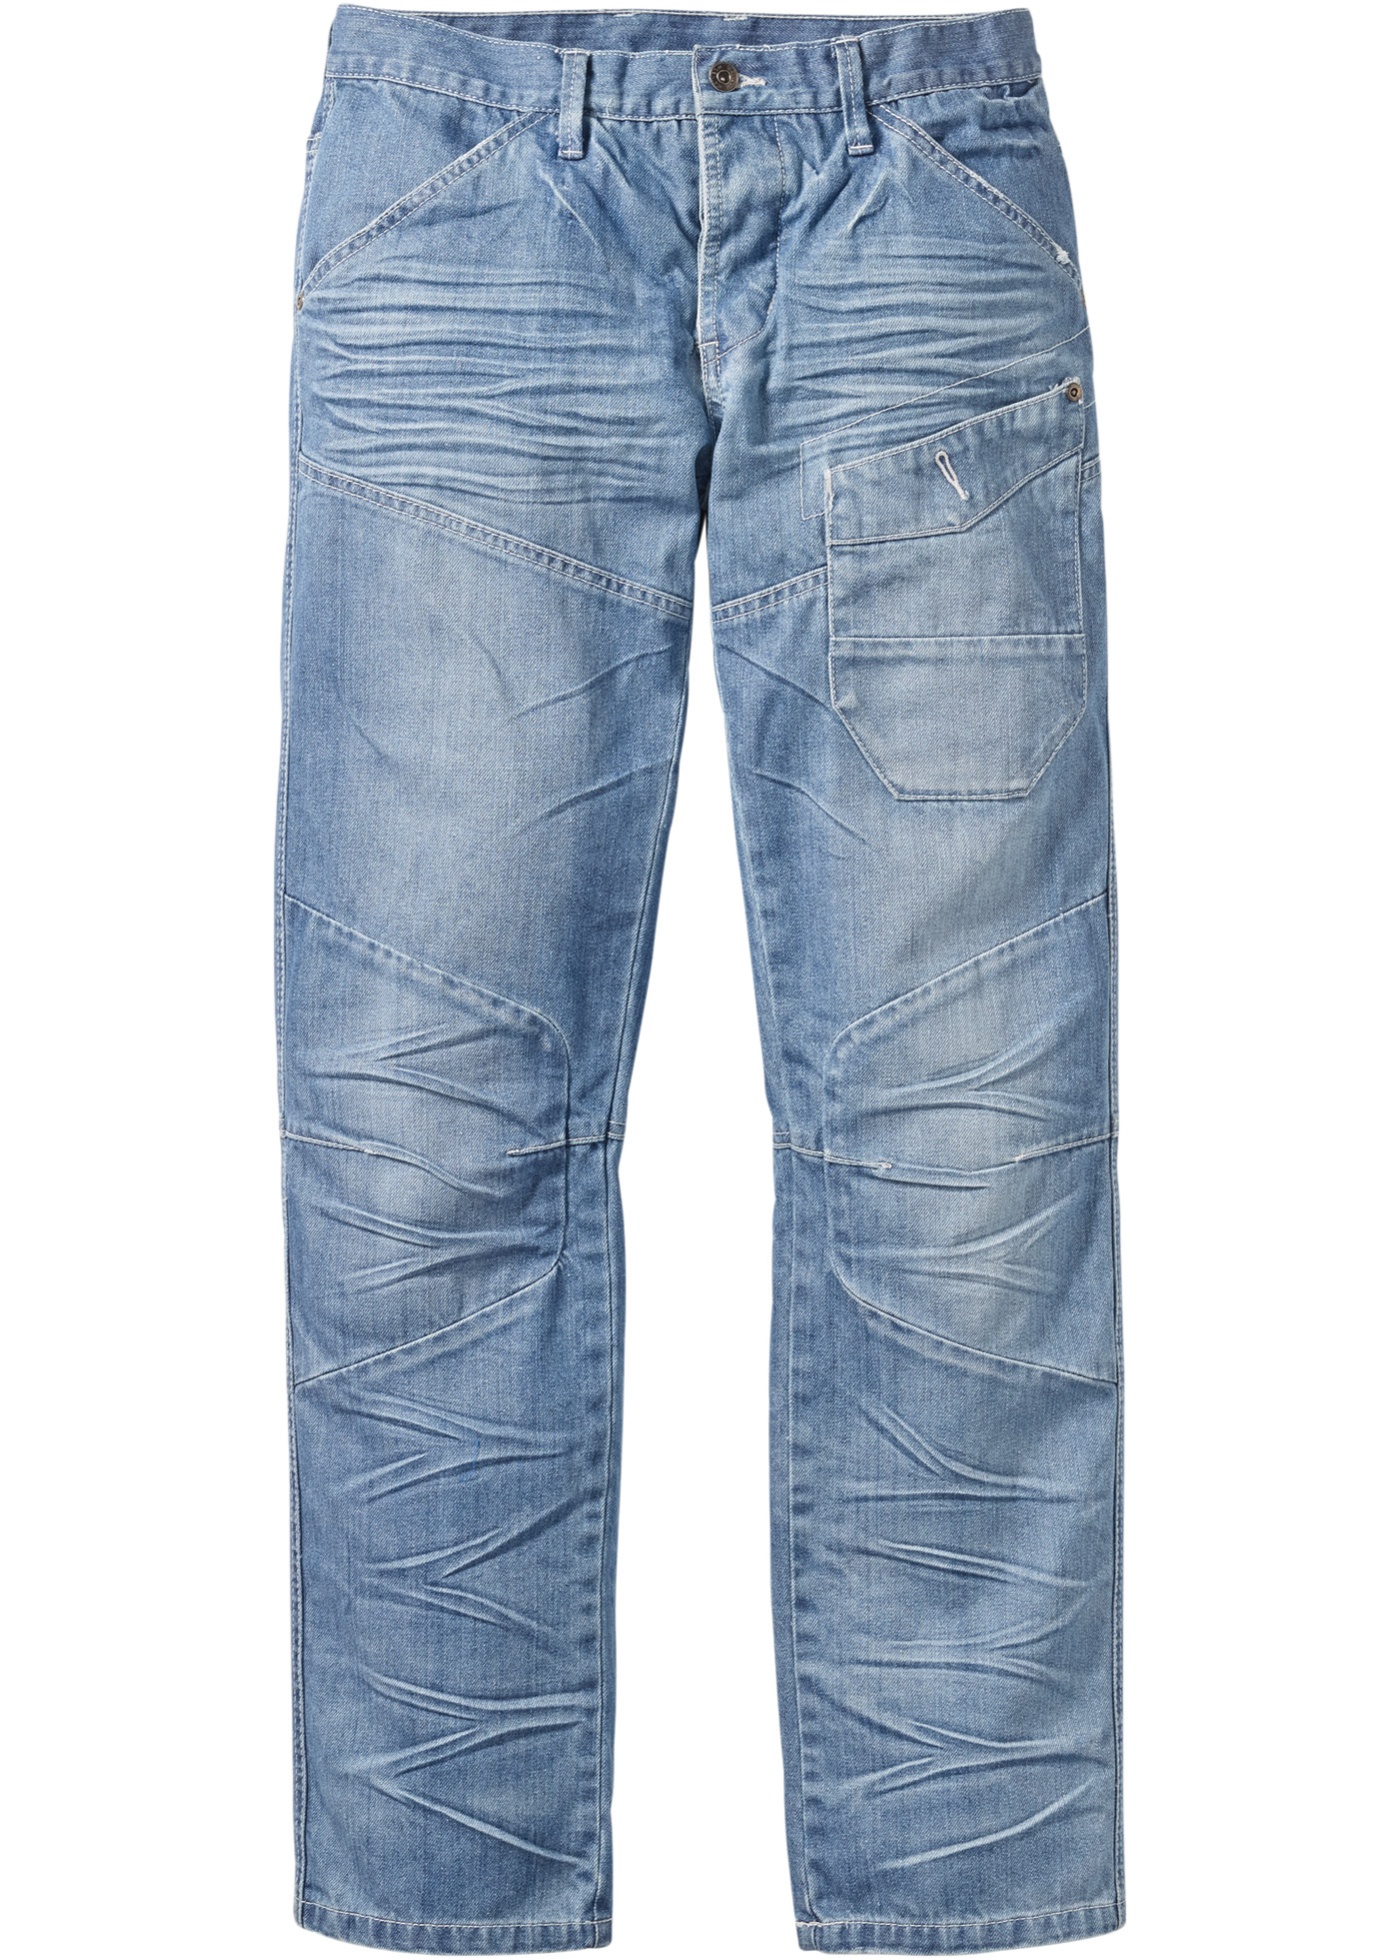 Jeans Regular Fit Straight, längd 32